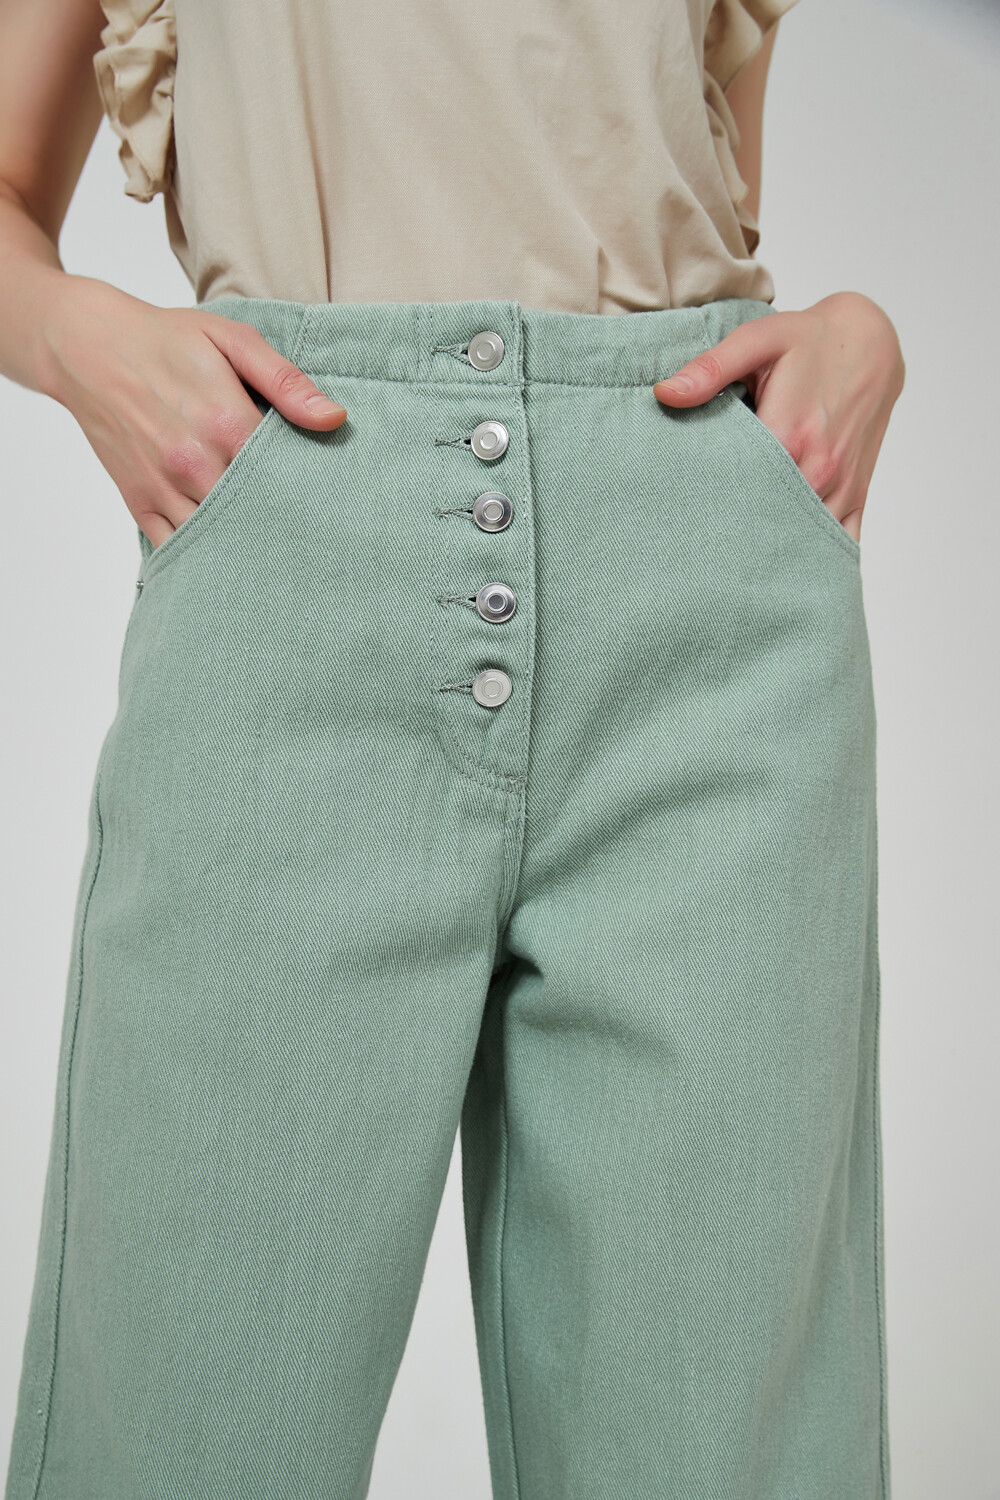 Pantalon Gobio Verde Seco